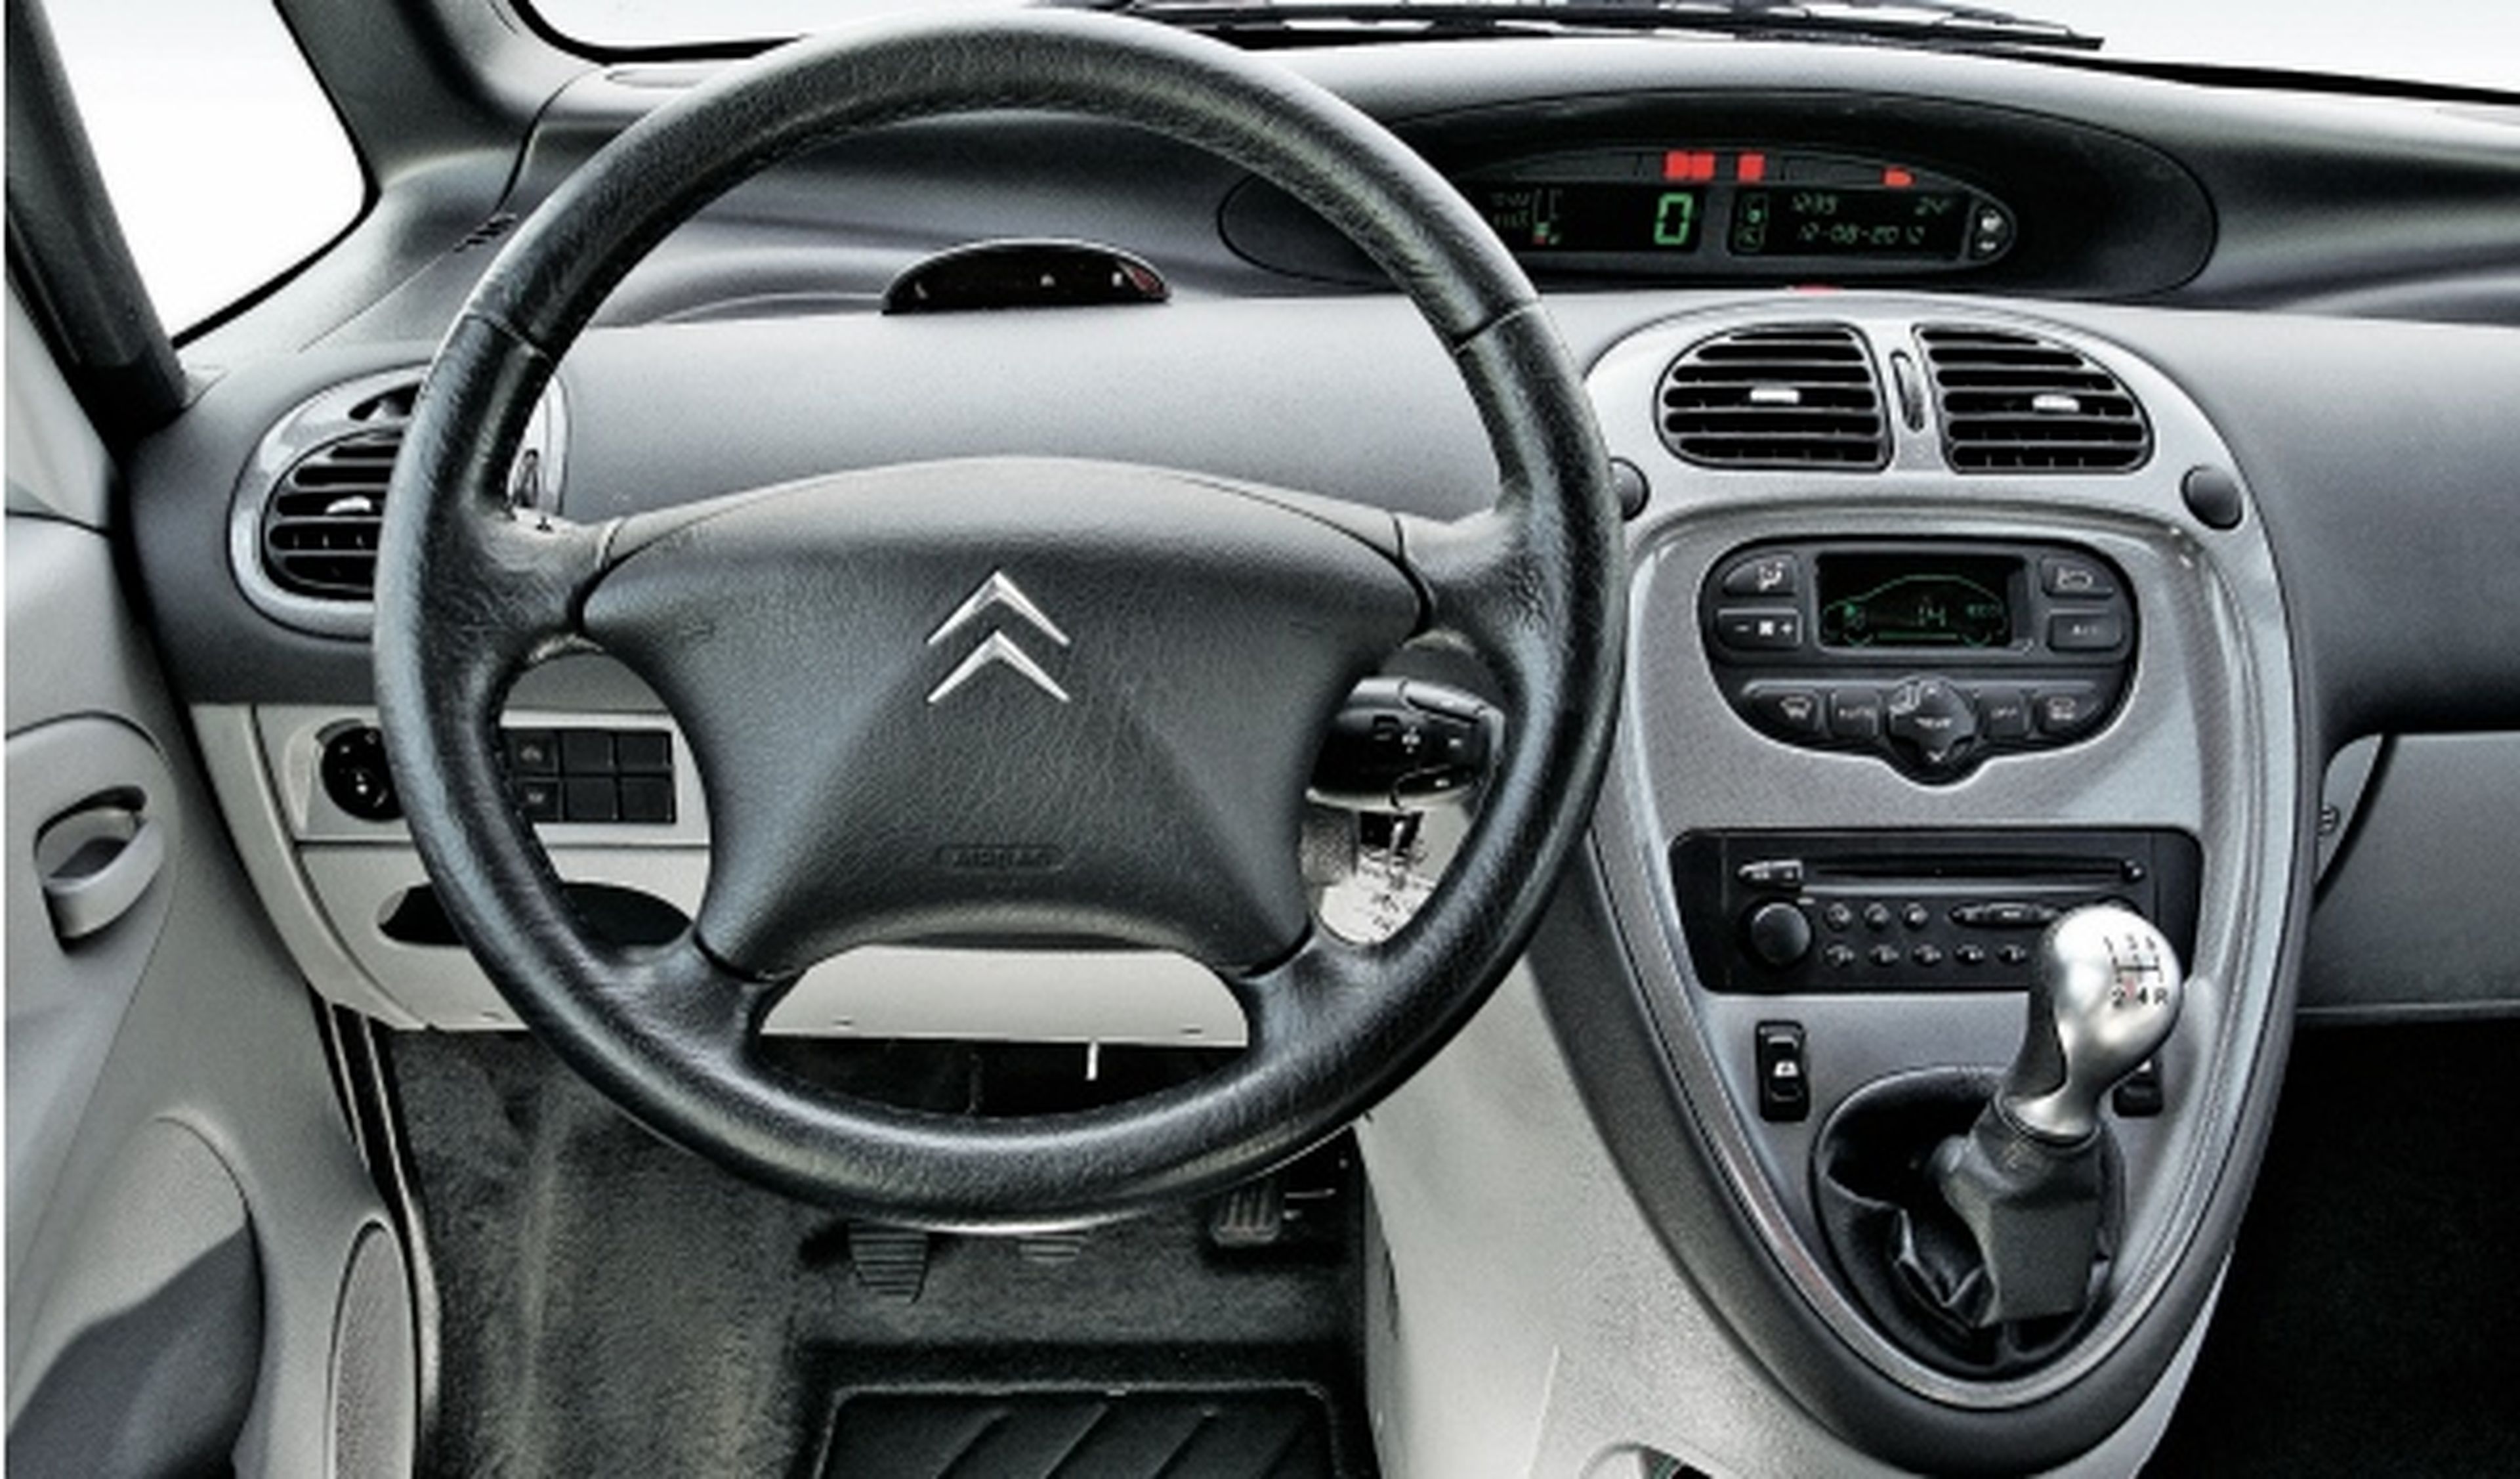 Segunda mano: Citroën Xsara Picasso, por casi 5.000 euros